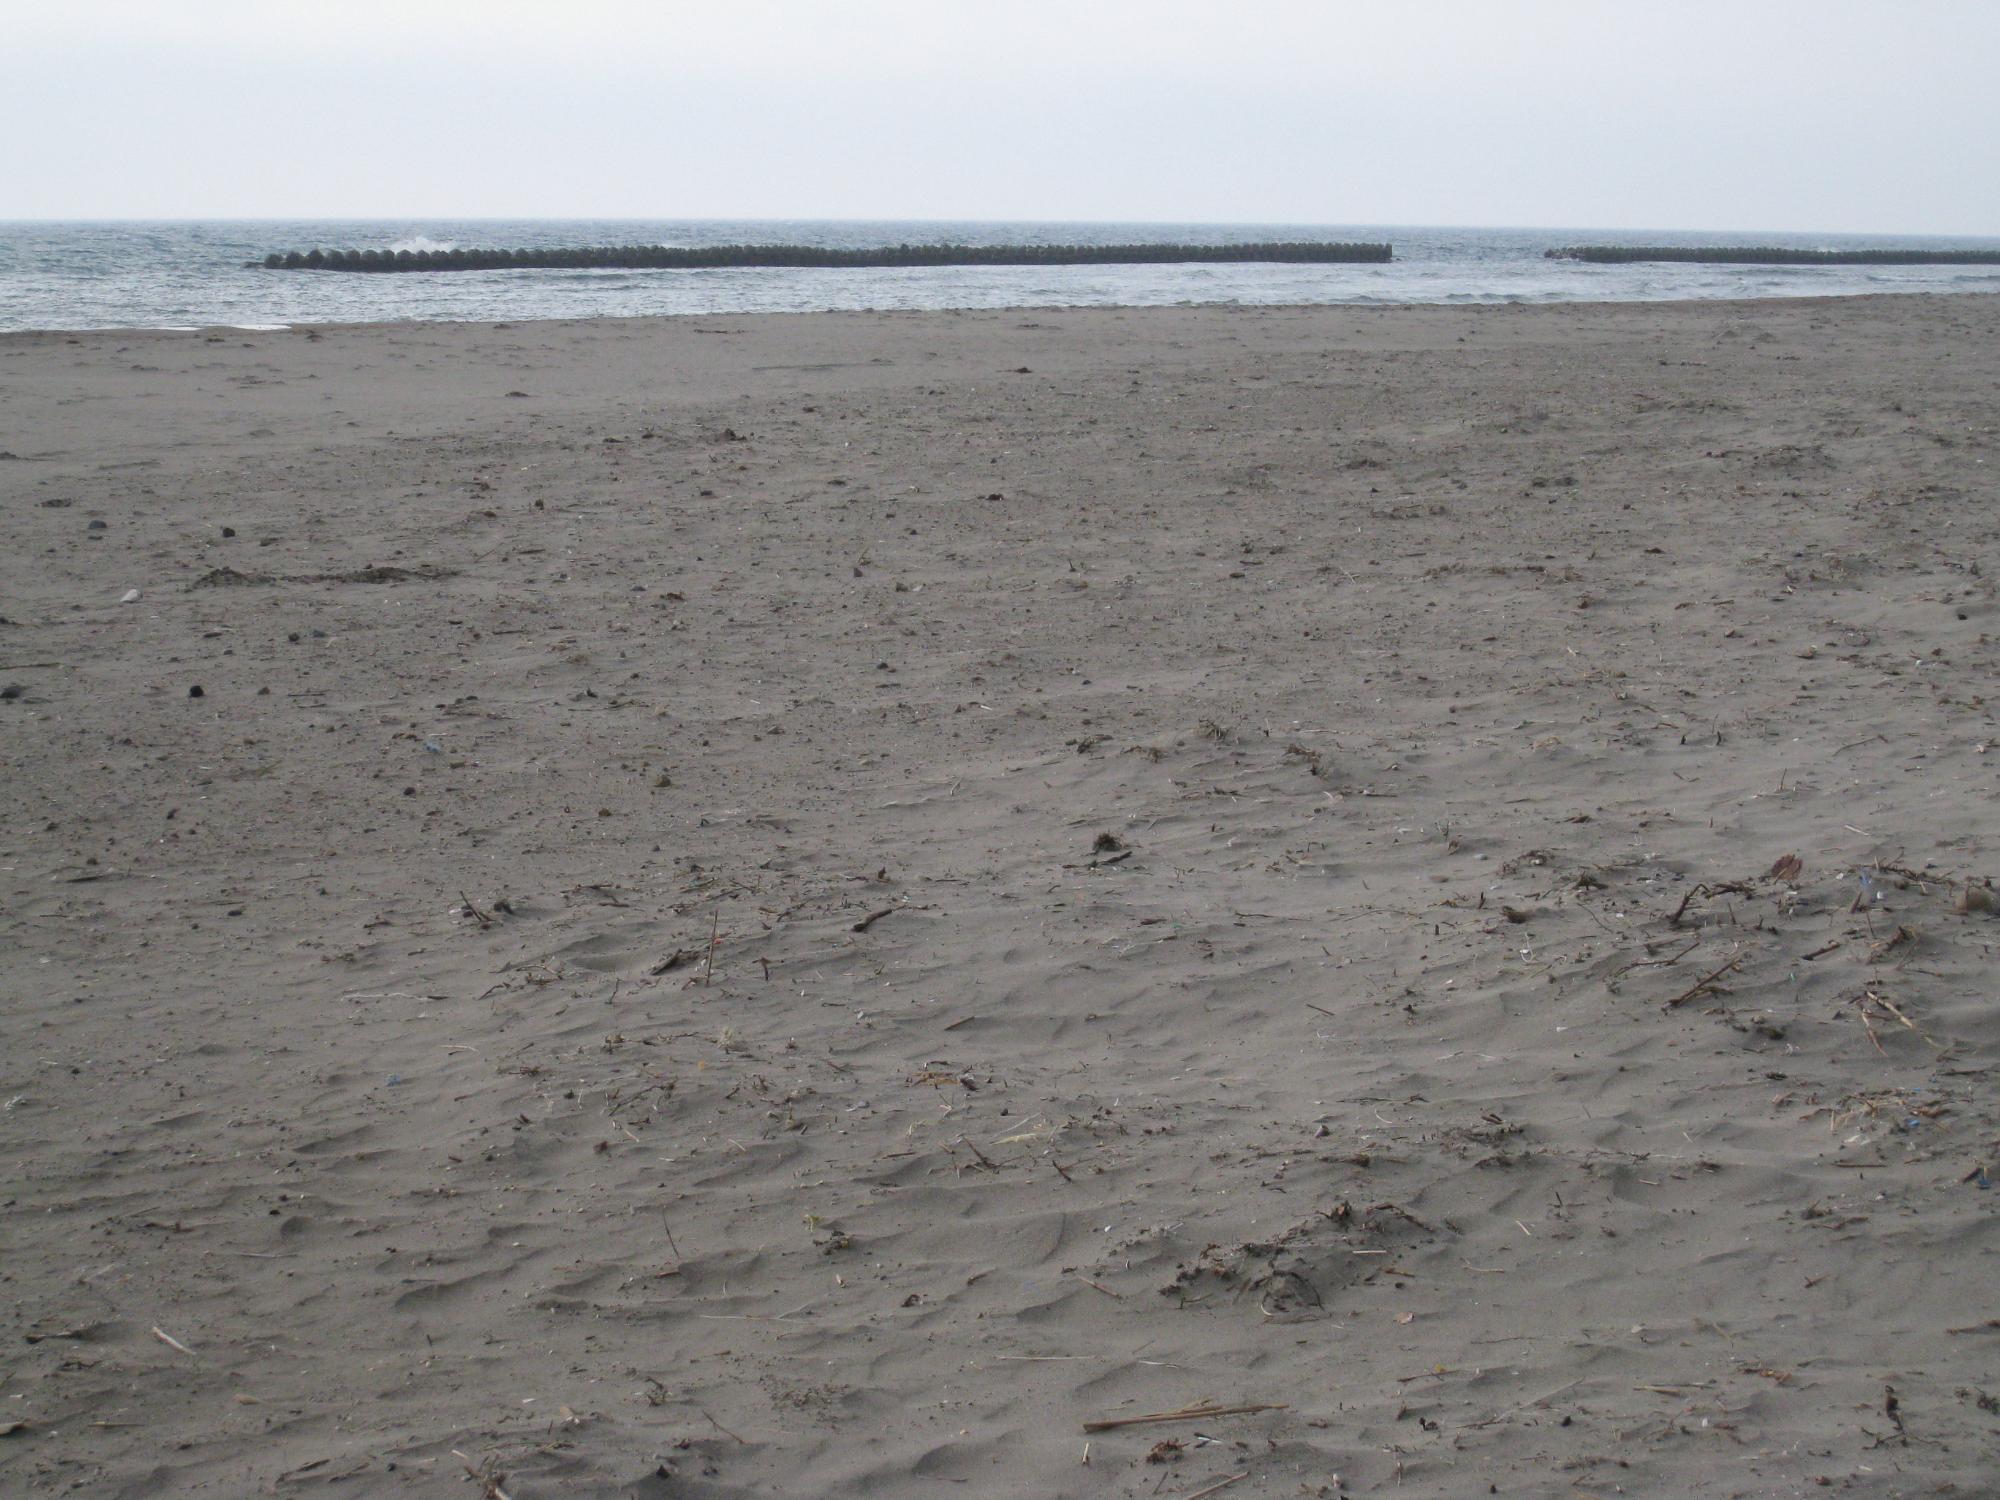 注射器が漂着した砂浜の写真